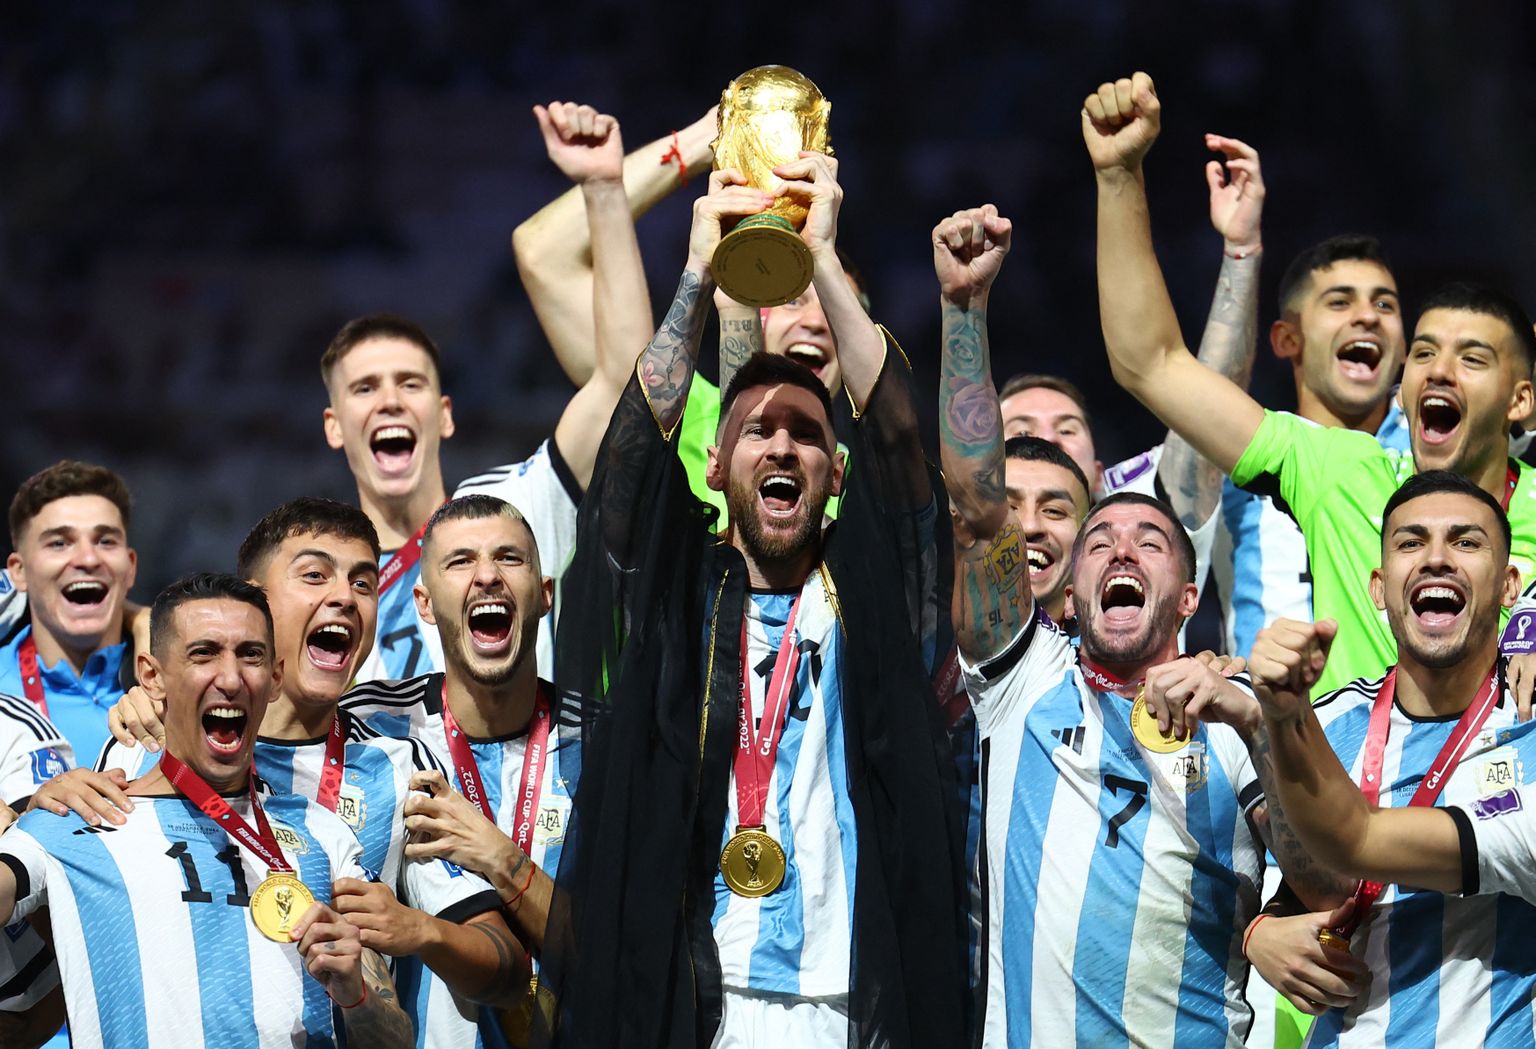 Võitmatu meeskond viis 2022 jalgpalli MM-i võidukarika Argentiinasse, mis viimati nautis seda au 36 aastat tagasi